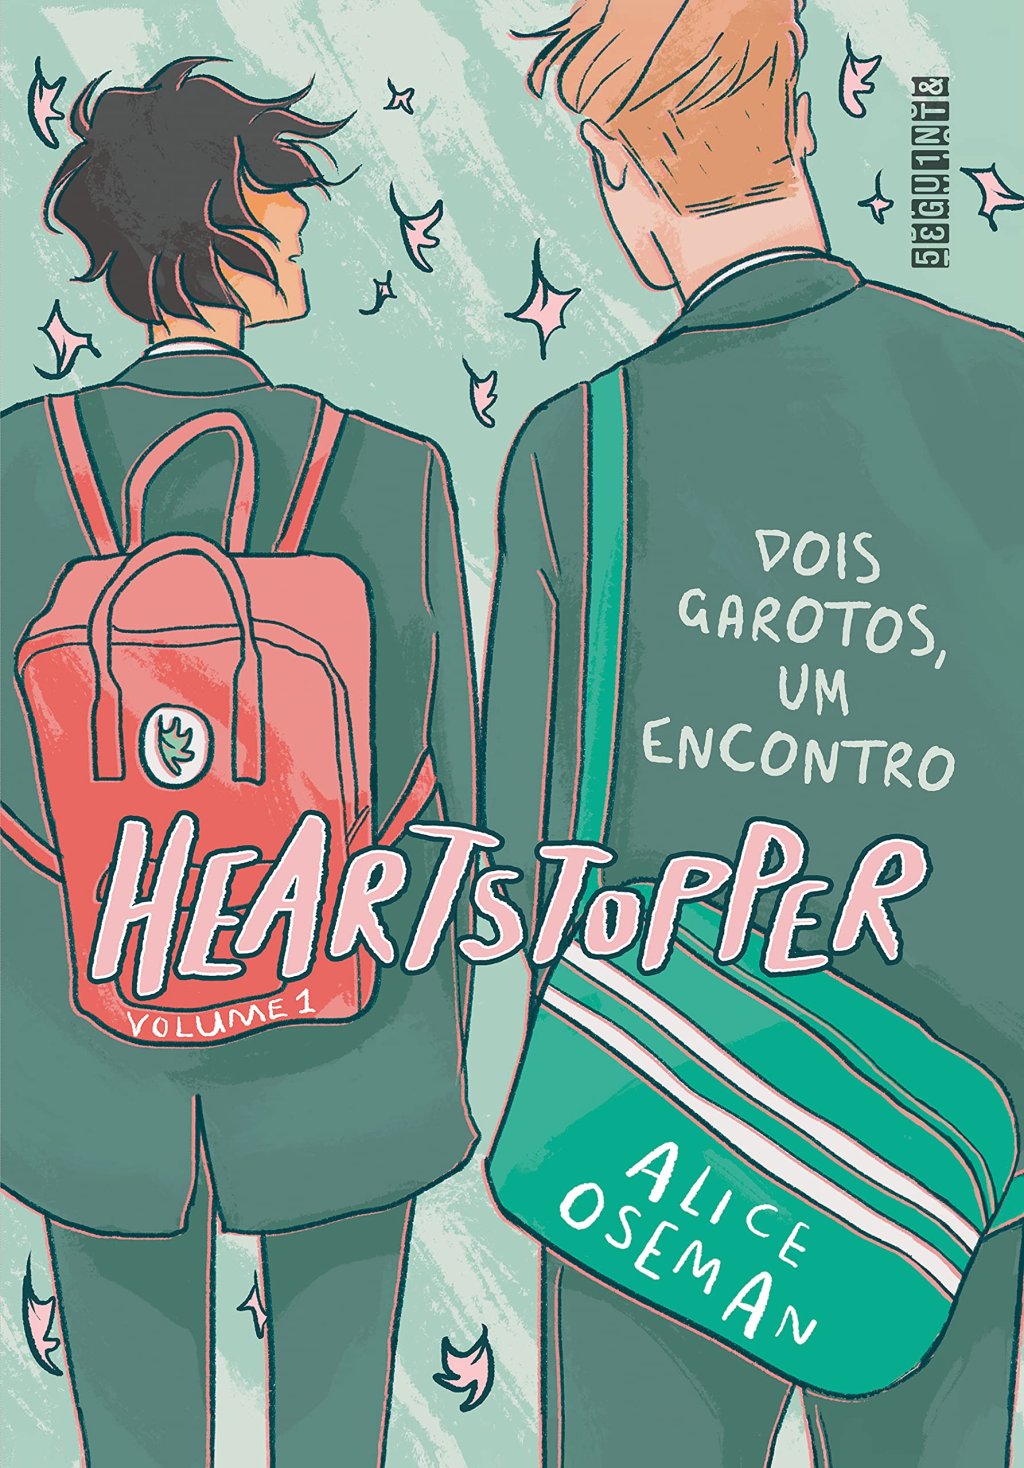 Capa de Heartstopper com dois ilustração de dois meninos de costas em um fundo verde; o título está na parte central em rosa e na parte direita está escrito "Dois garotos, um encontro"